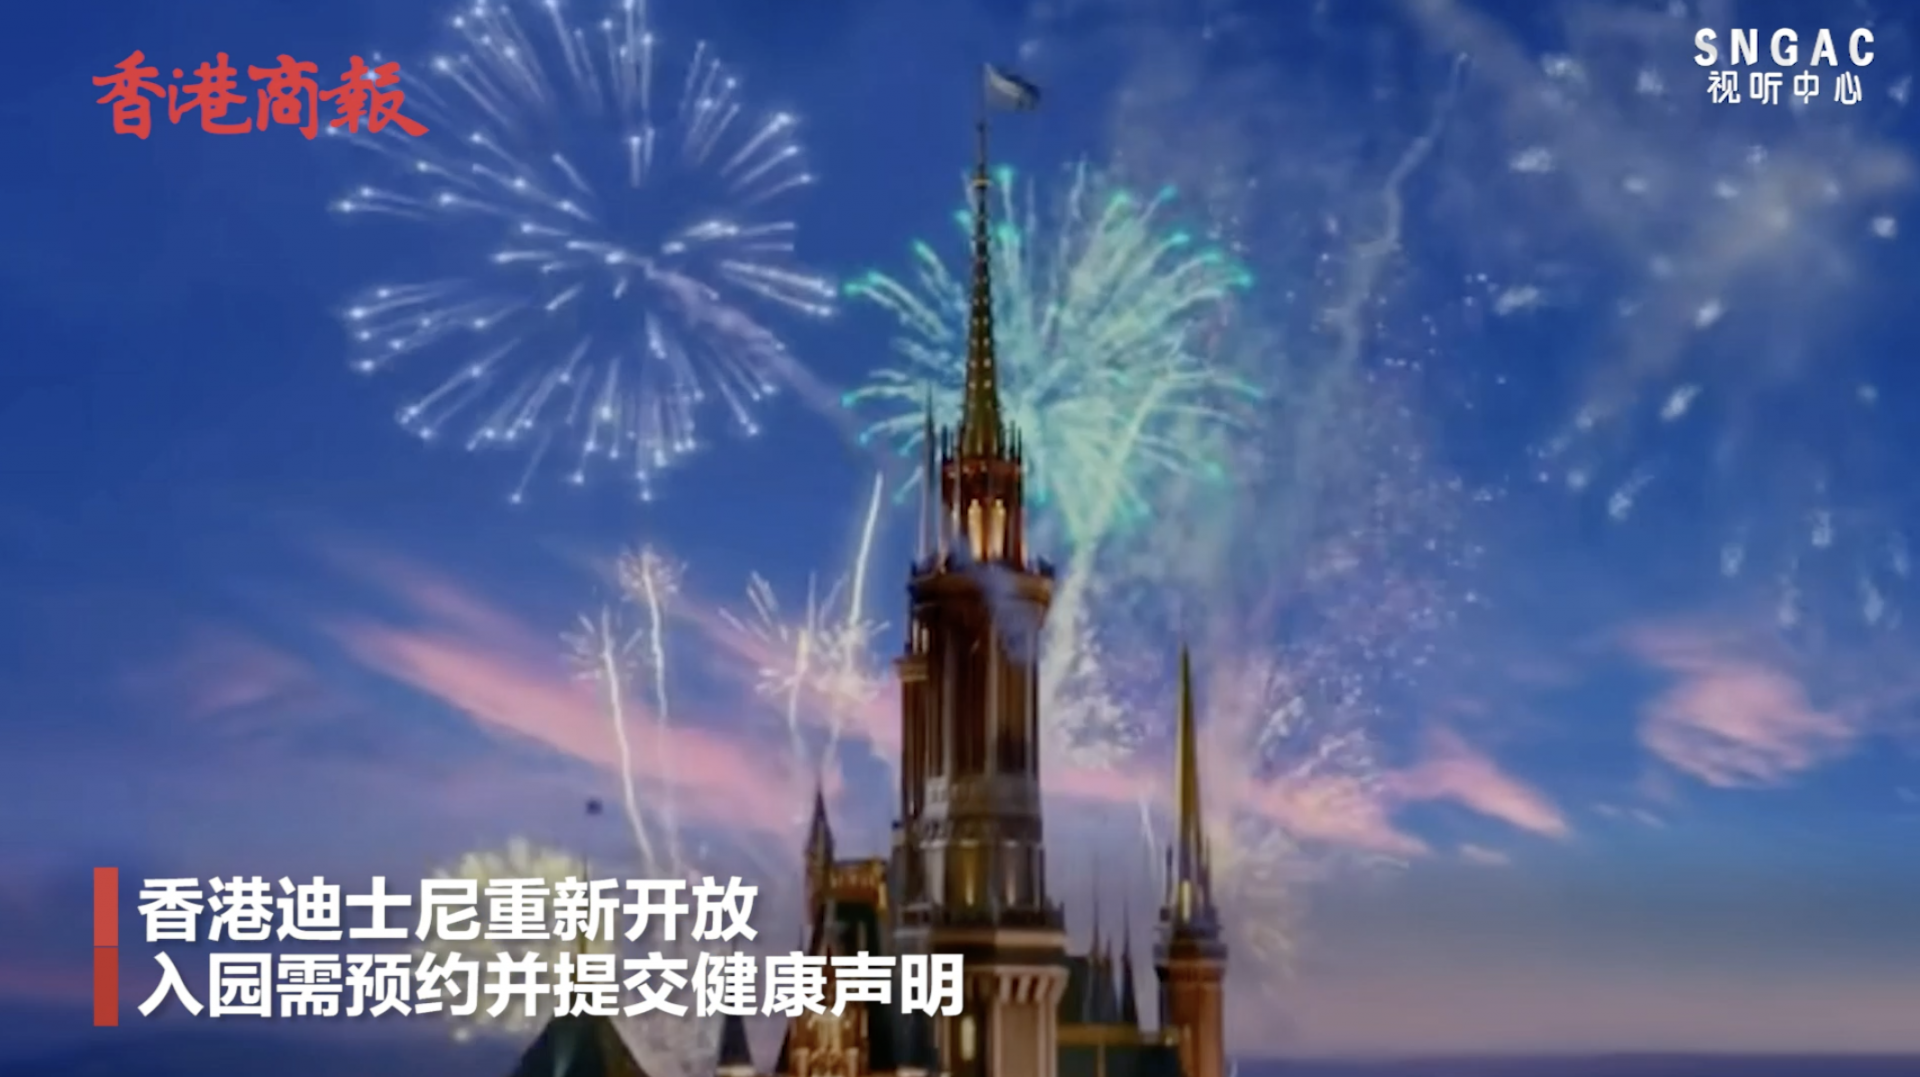 明起香港迪士尼重新开放 入园需提交健康声明